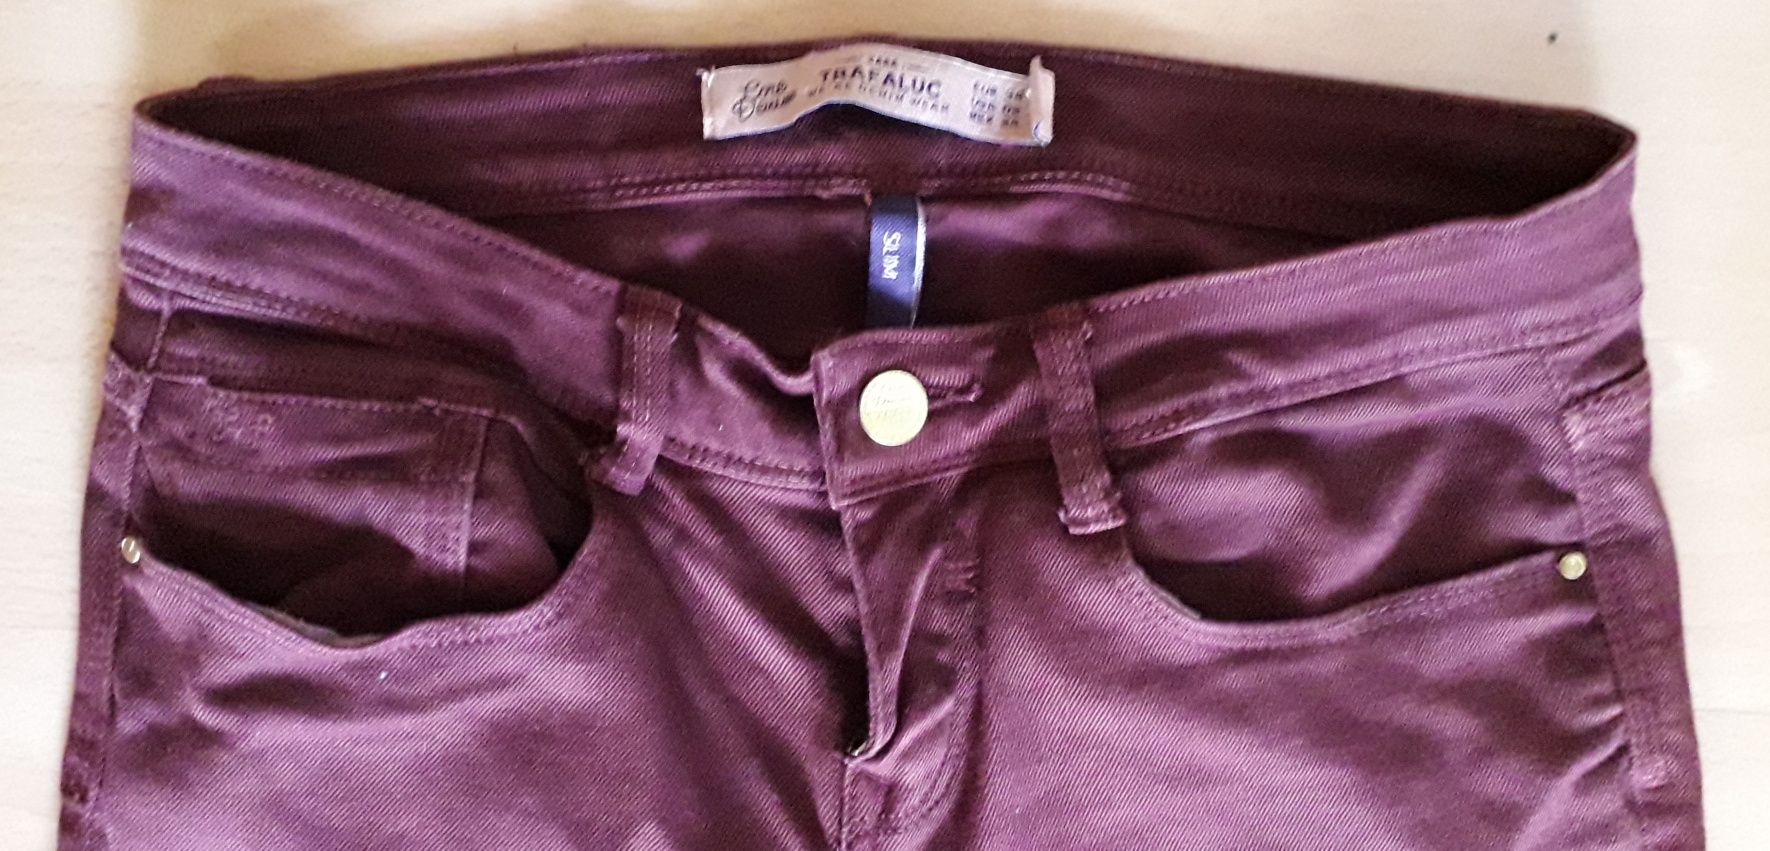 Spodnie Zara 34 slim xs bordowe burgund